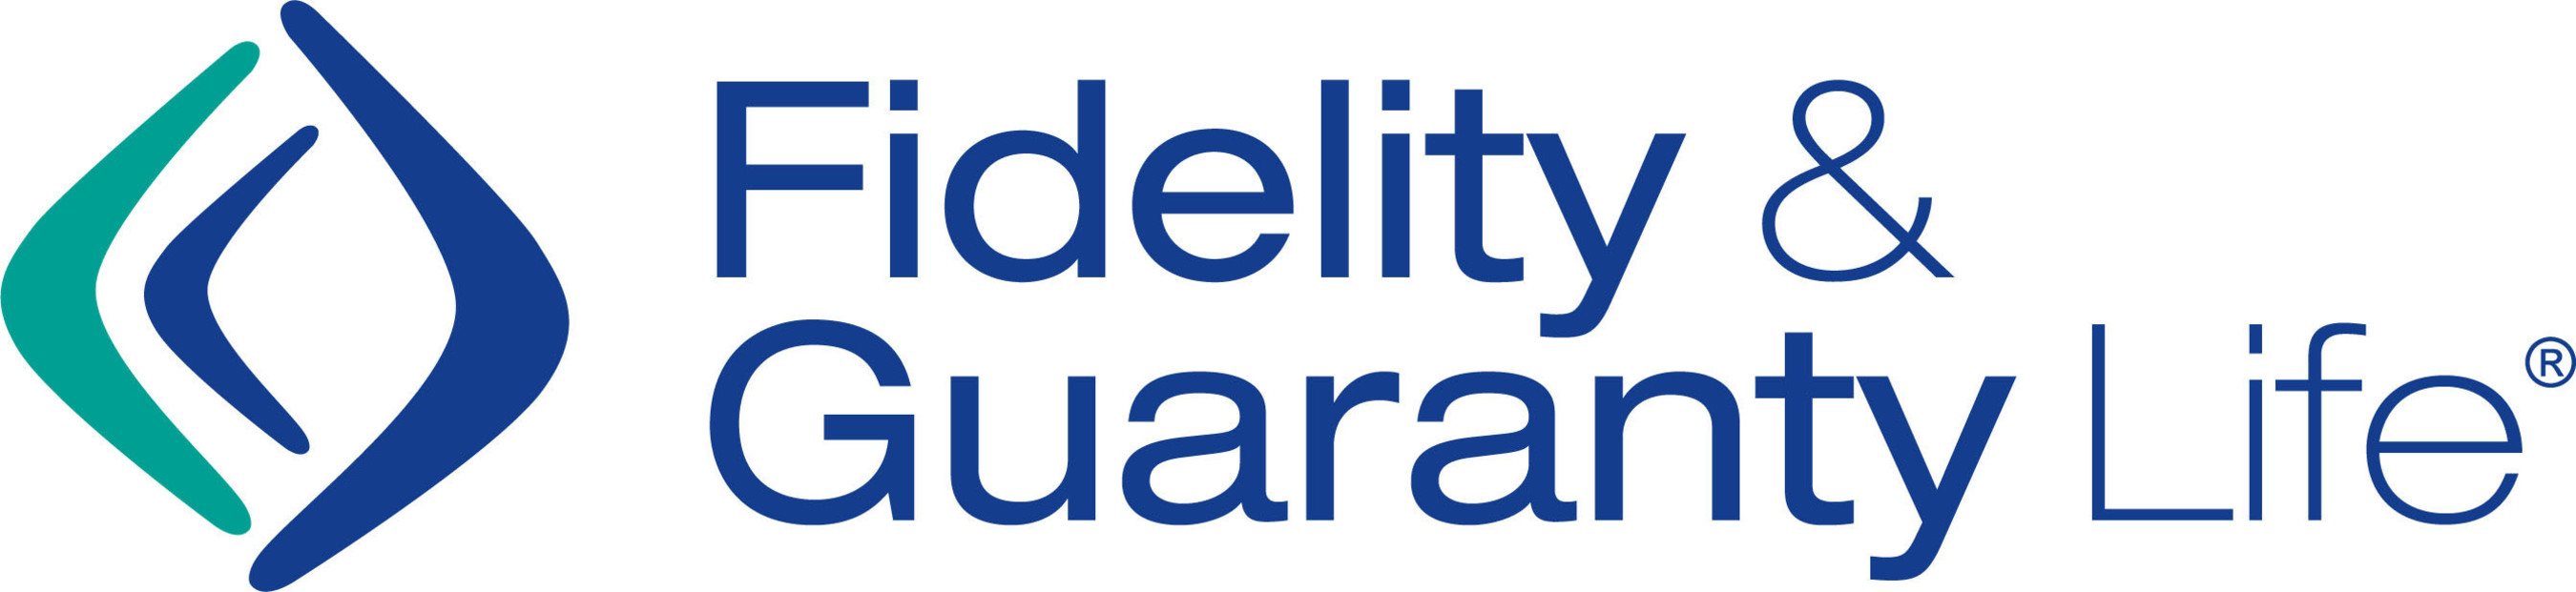 Fidelity & Guaranty Life Logo. (PRNewsFoto/Fidelity & Guaranty Life) (PRNewsFoto/FIDELITY & GUARANTY LIFE)